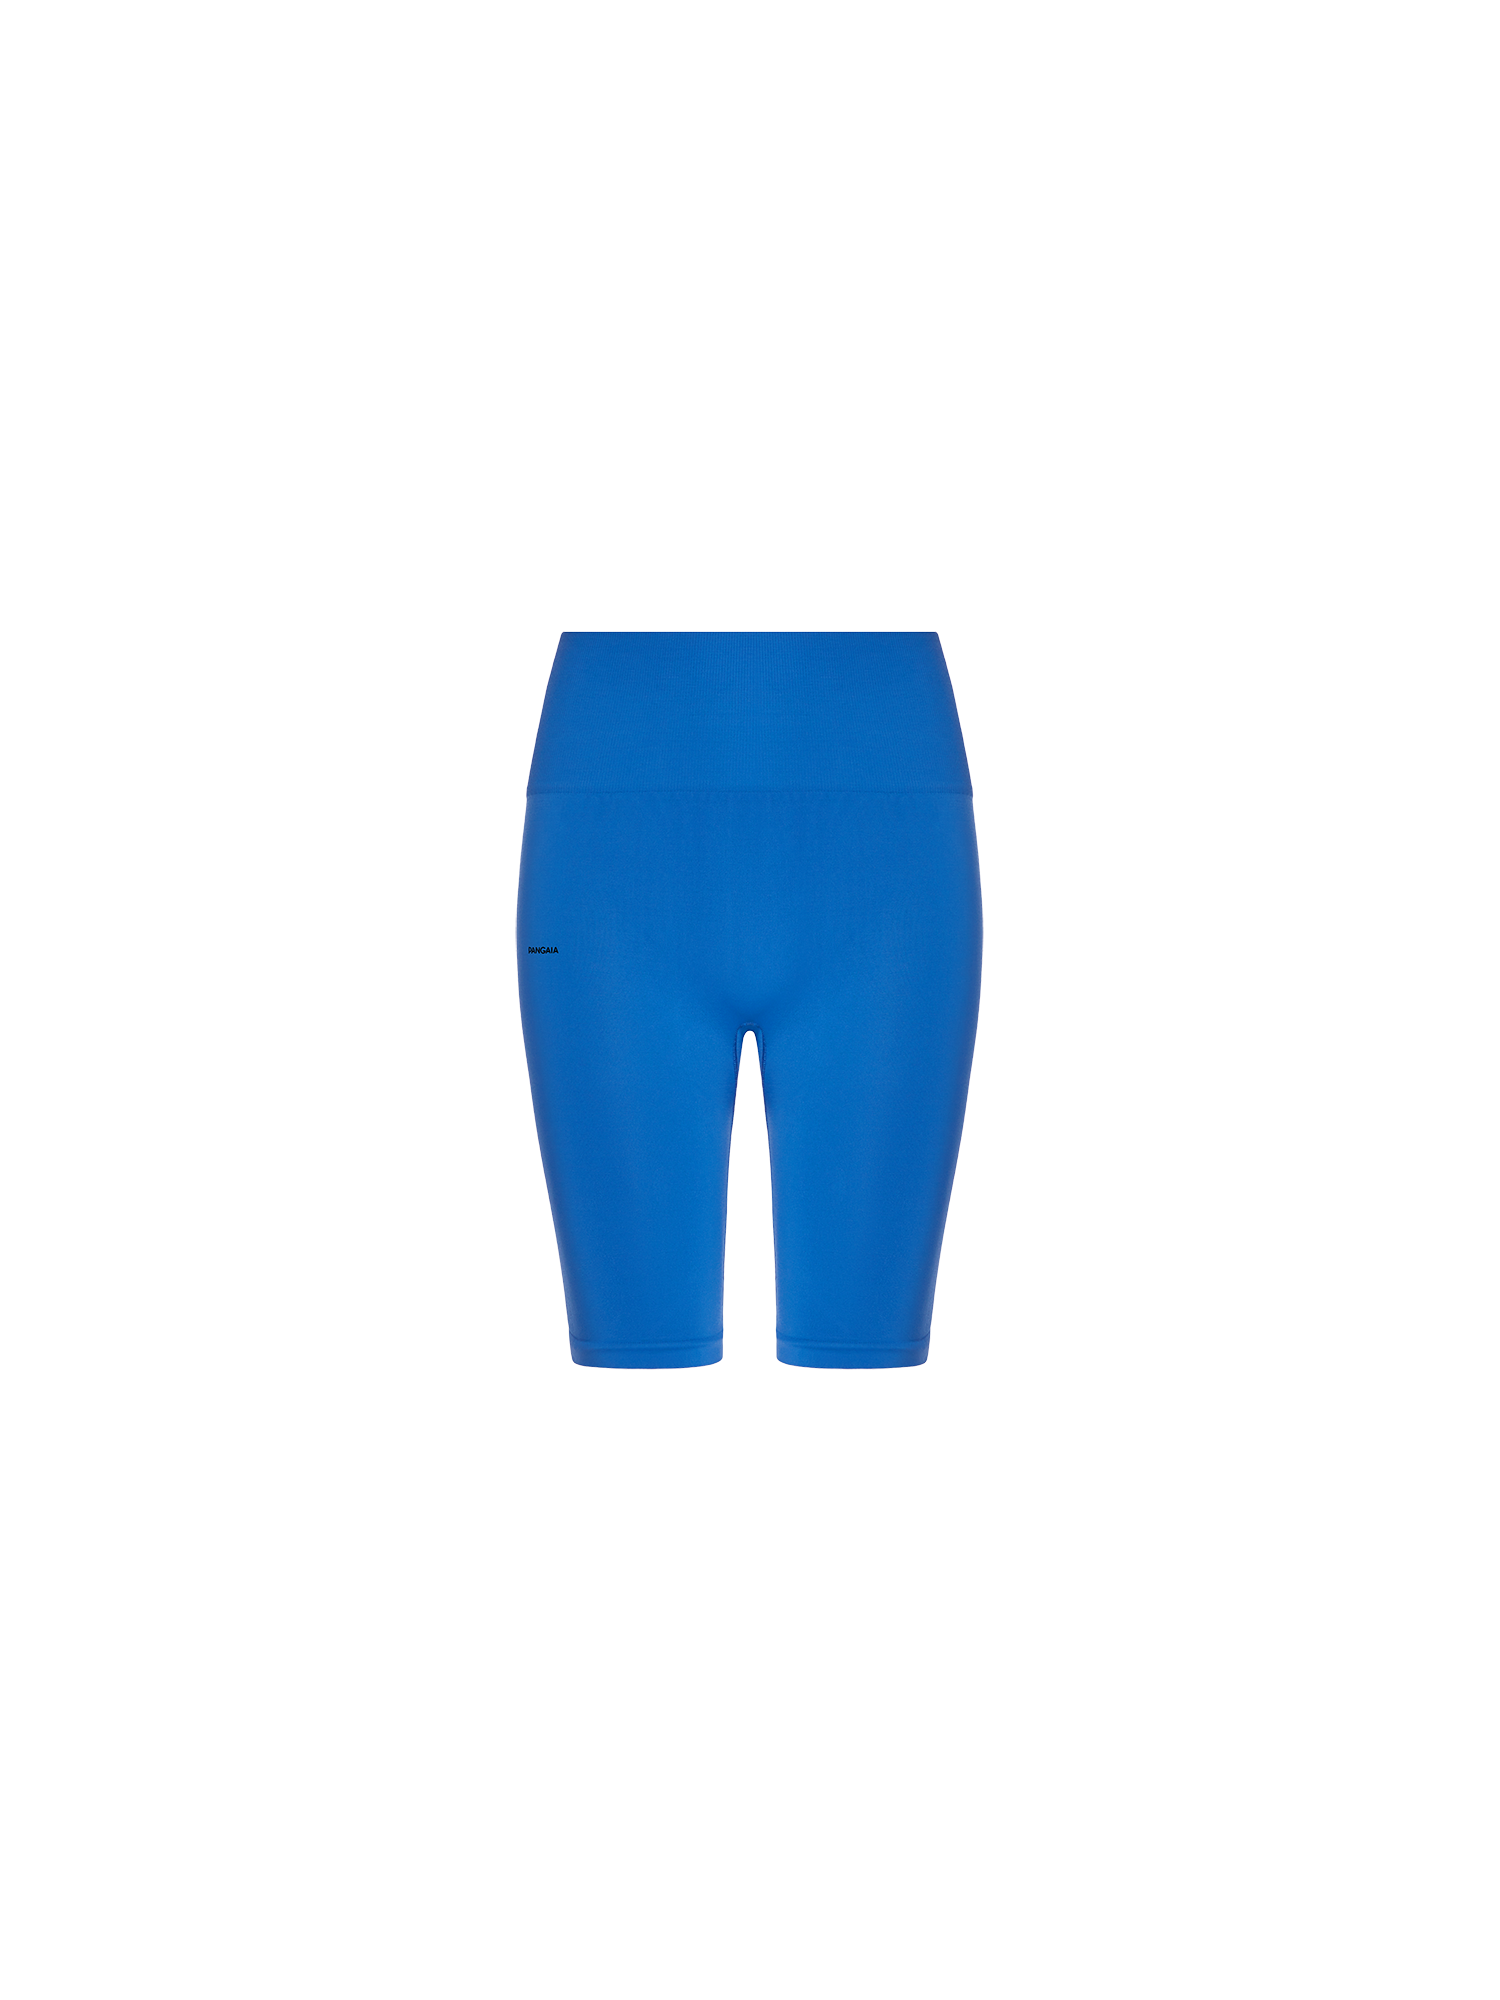 PANGAIA - Women's Plant-Stretch Compressive Cycle Shorts - Cobalt Blue L